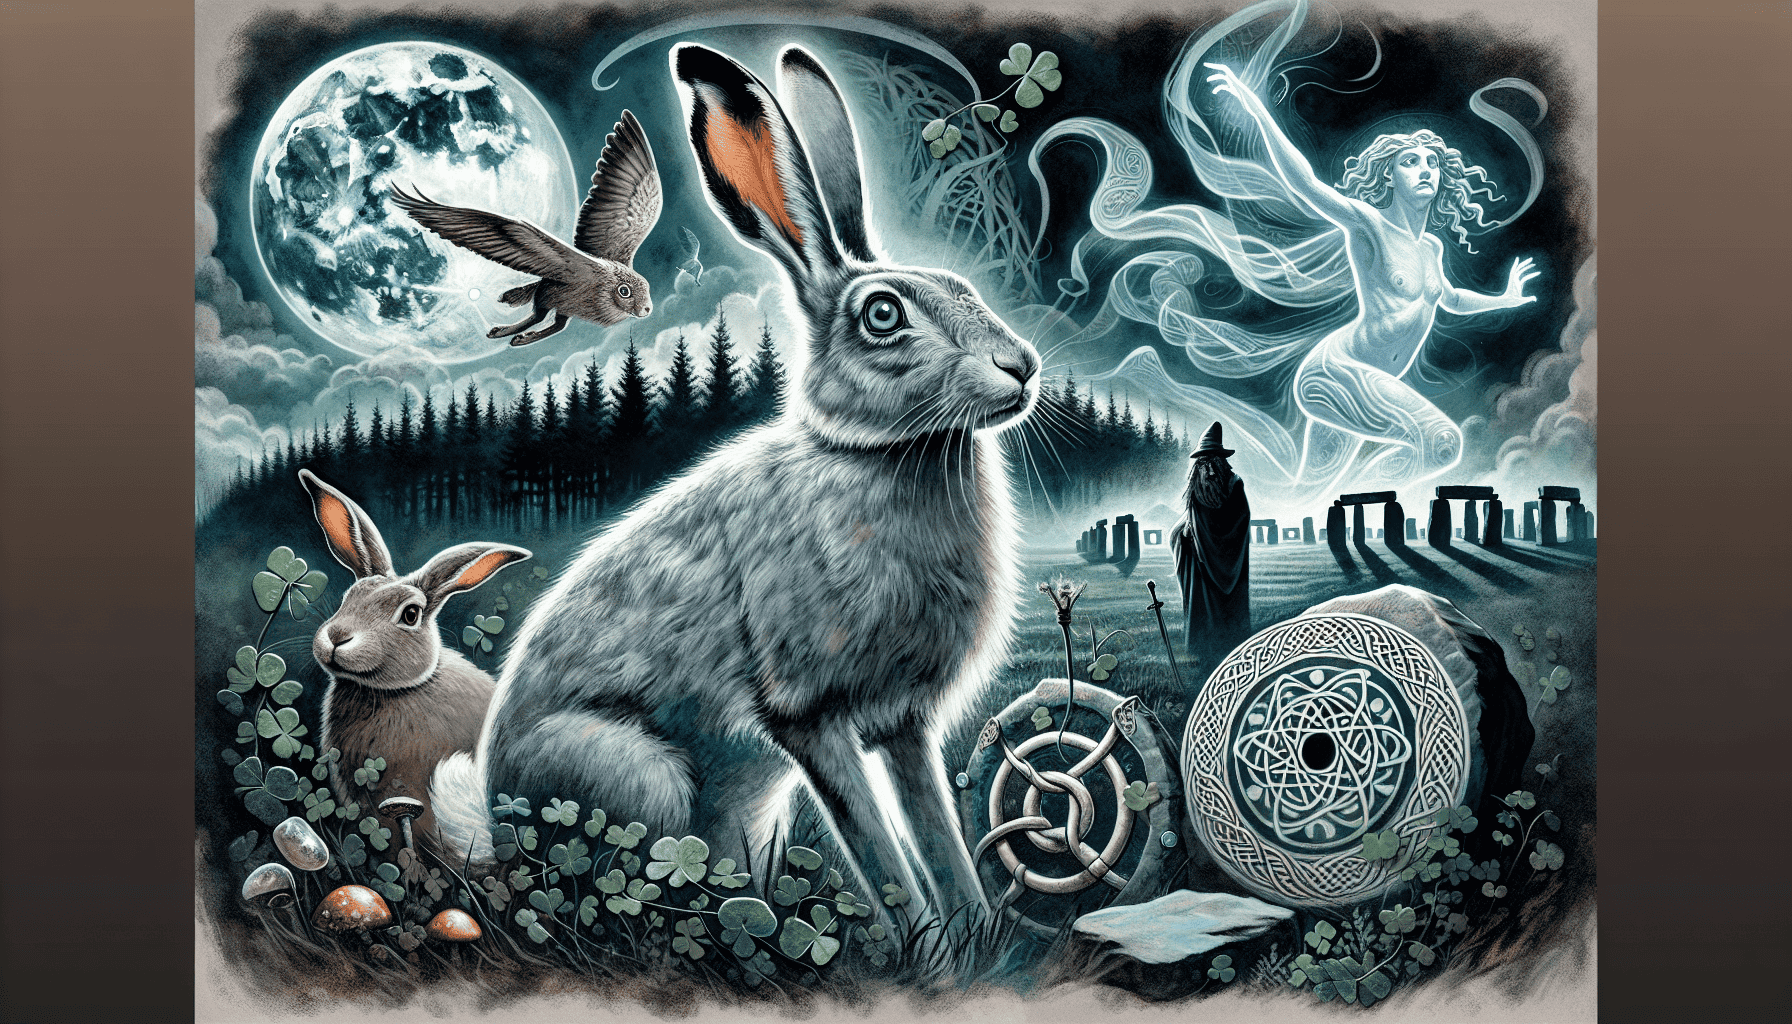 Irish Hare in Mythology